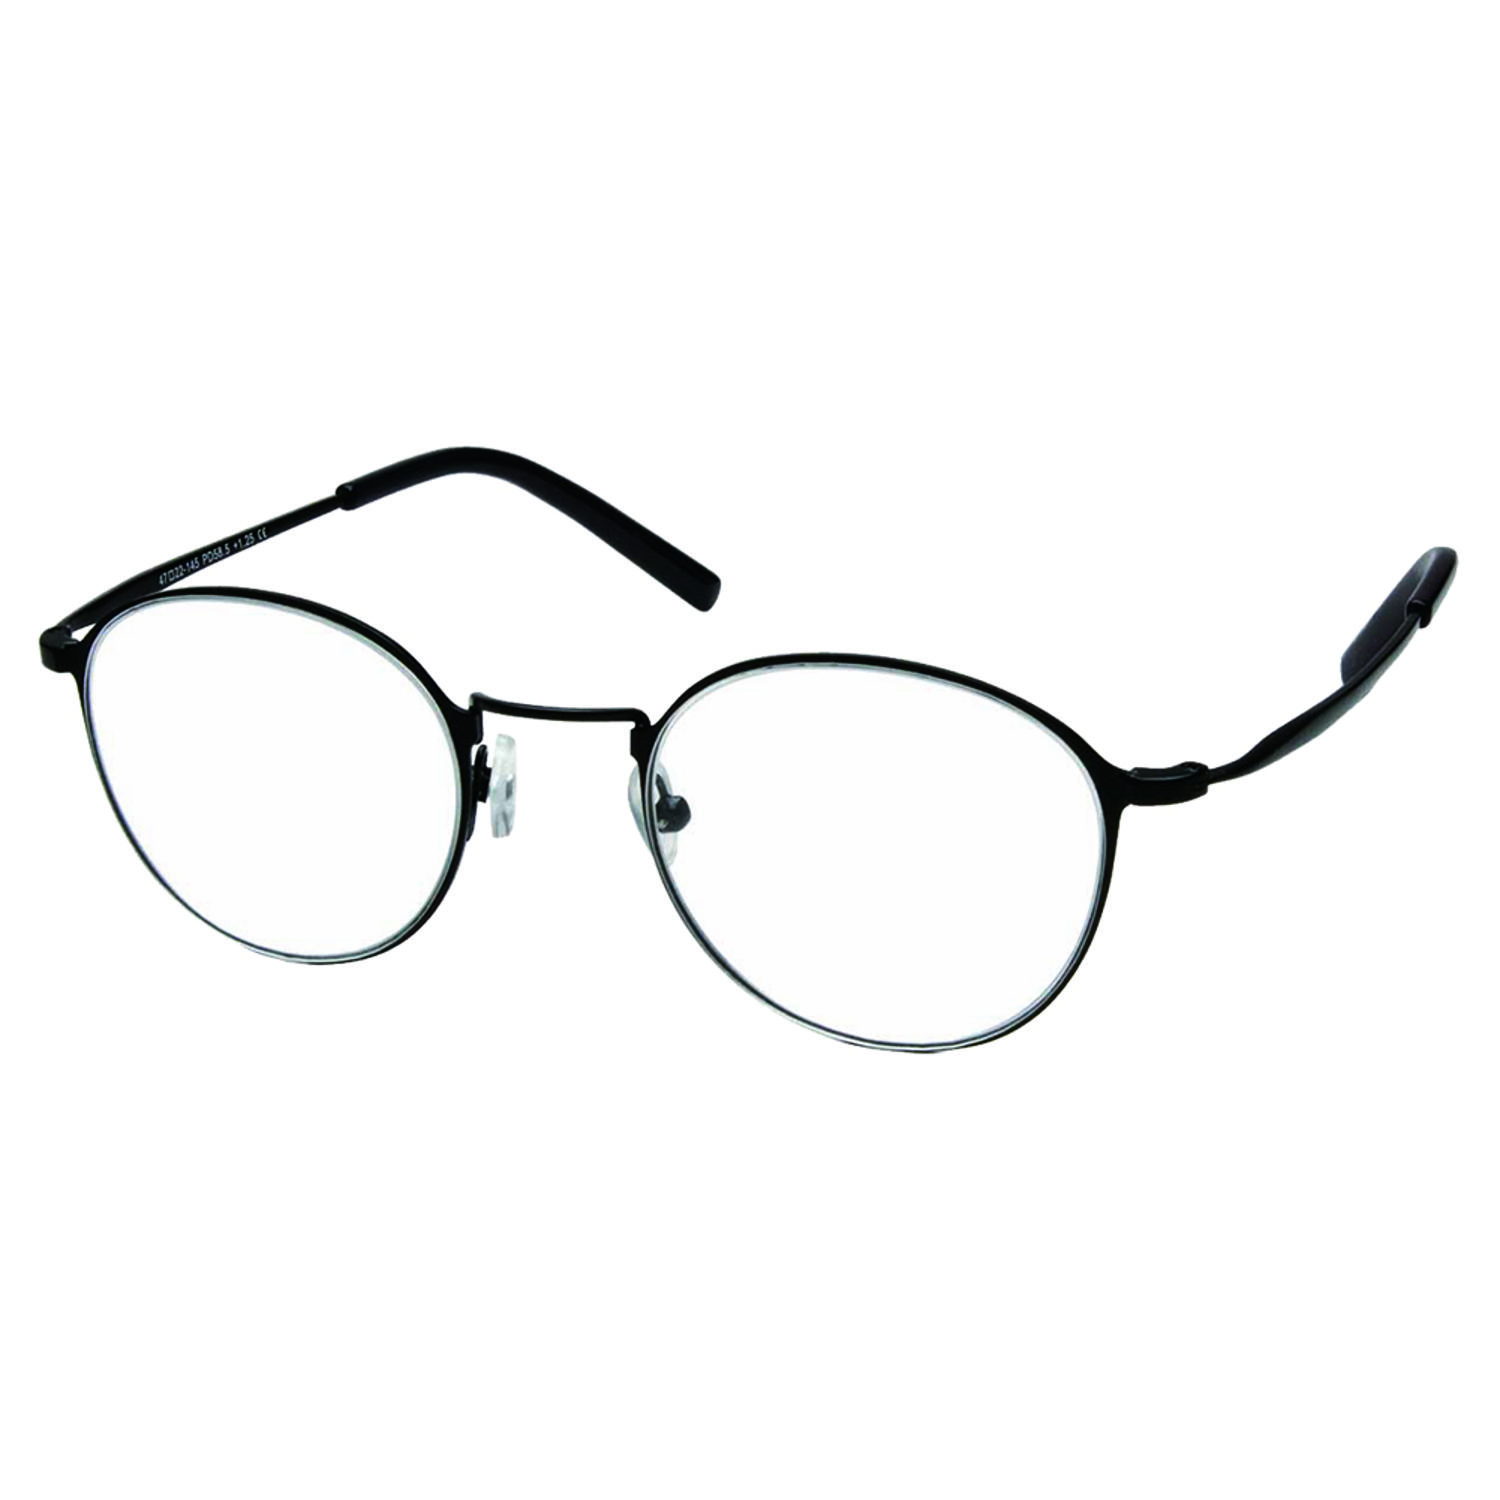 541円 素晴らしい 老眼鏡 おしゃれ メンズ レディース 男性 女性 シニアグラス リーディンググラス 4470 スクエア 非球面レンズ 40代 50代 ６度数 1.00 1.50 2.00 2.50 3.00 3.50